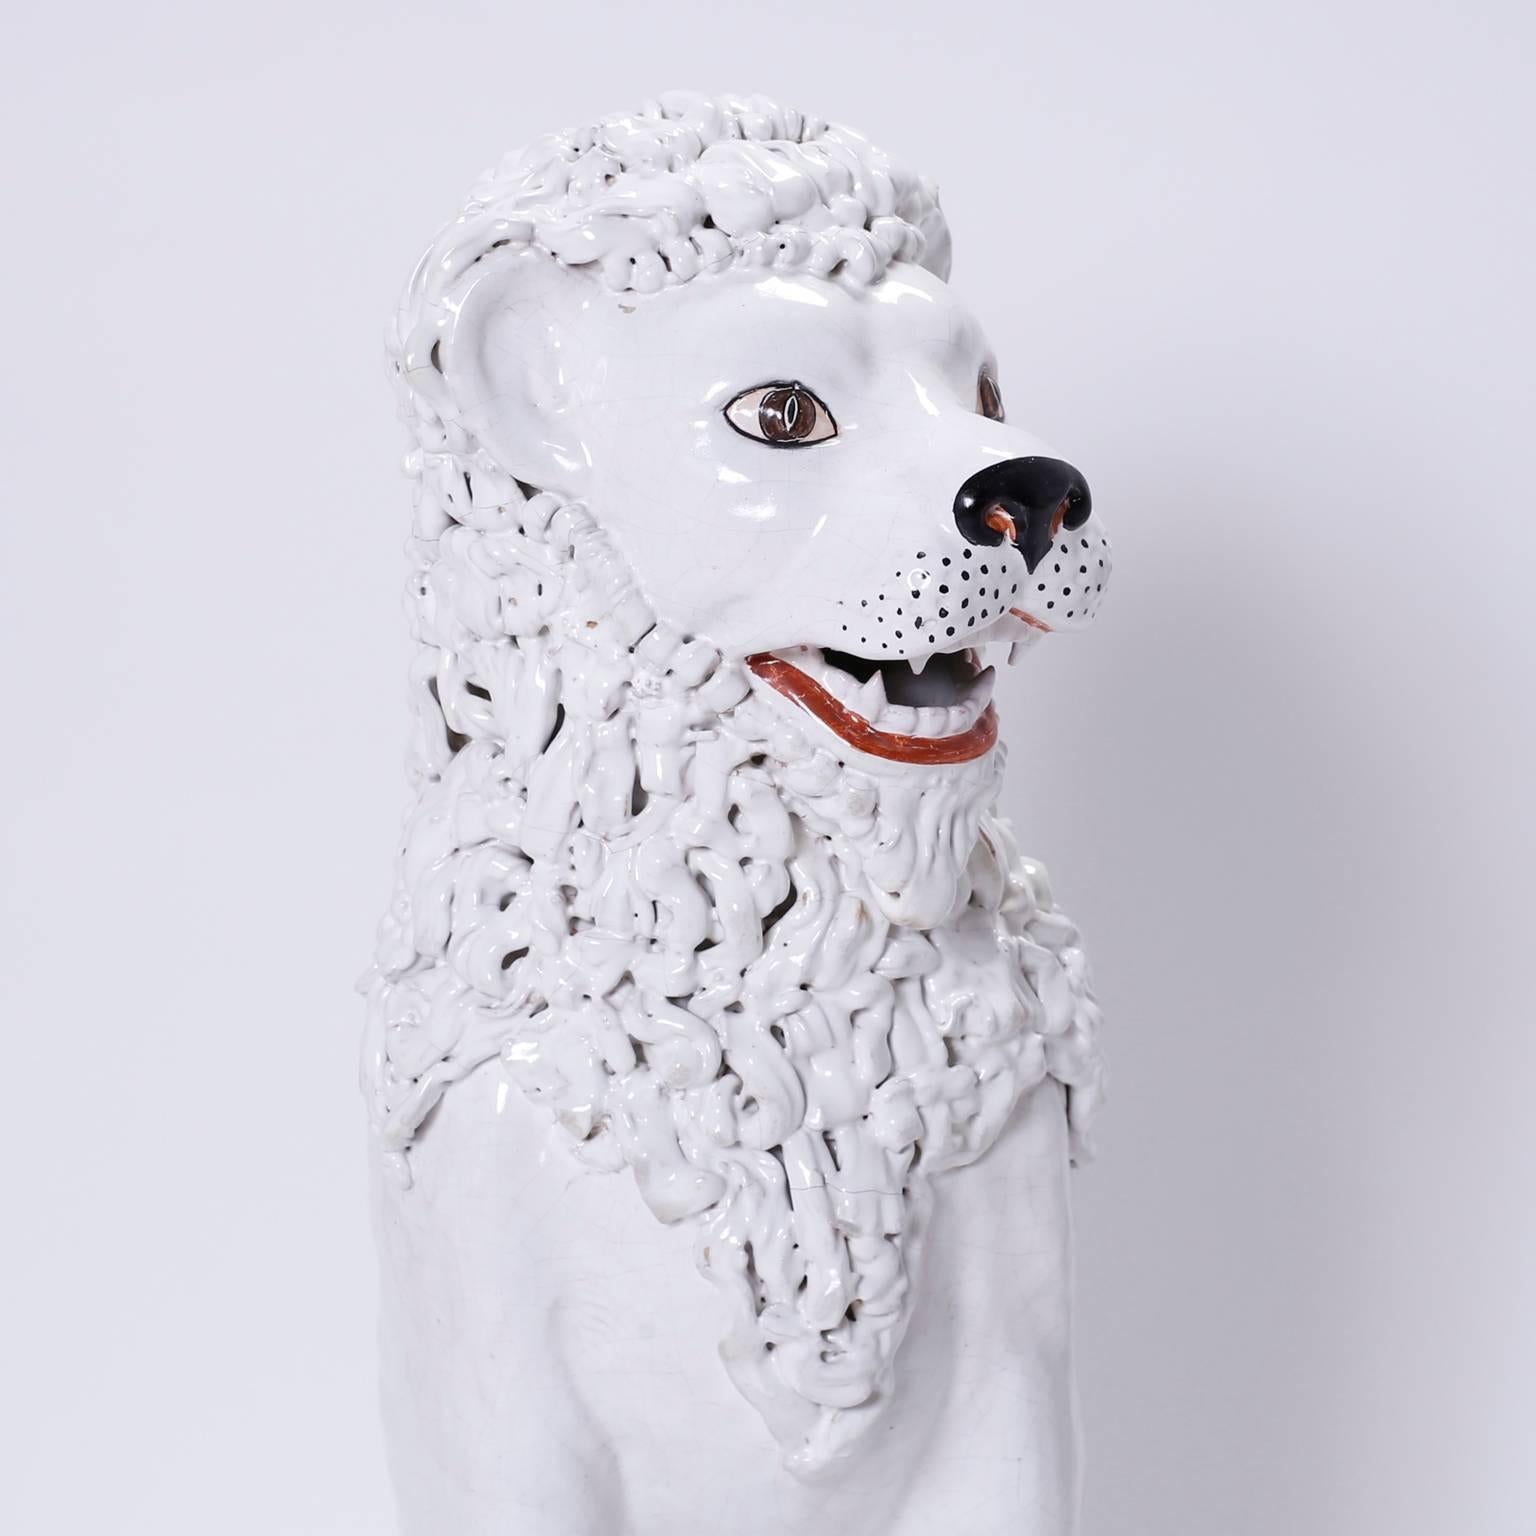 Skurriles Paar italienischer männlicher und weiblicher Terrakotta-Löwen aus der Mitte des Jahrhunderts mit weißer Glasur und
details lackiert. Obwohl diese sitzenden Großkatzen kaum wild sind
durch ihre unerwartete Freundlichkeit und ihr